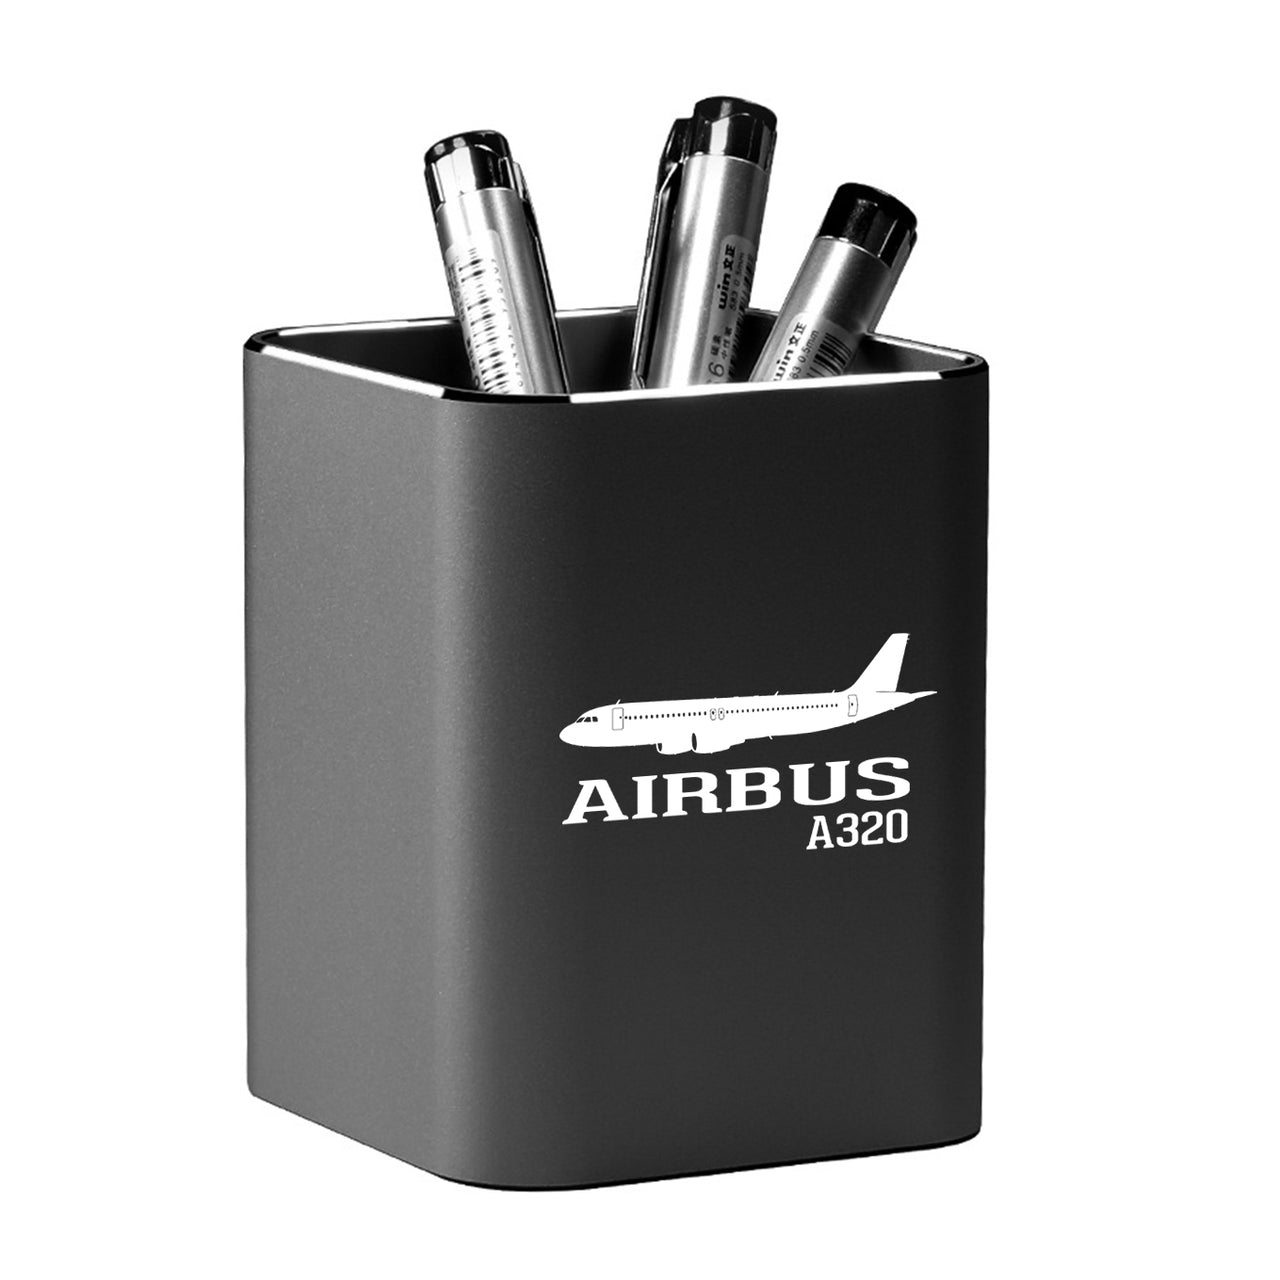 Airbus A320 Printed Designed Aluminium Alloy Pen Holders